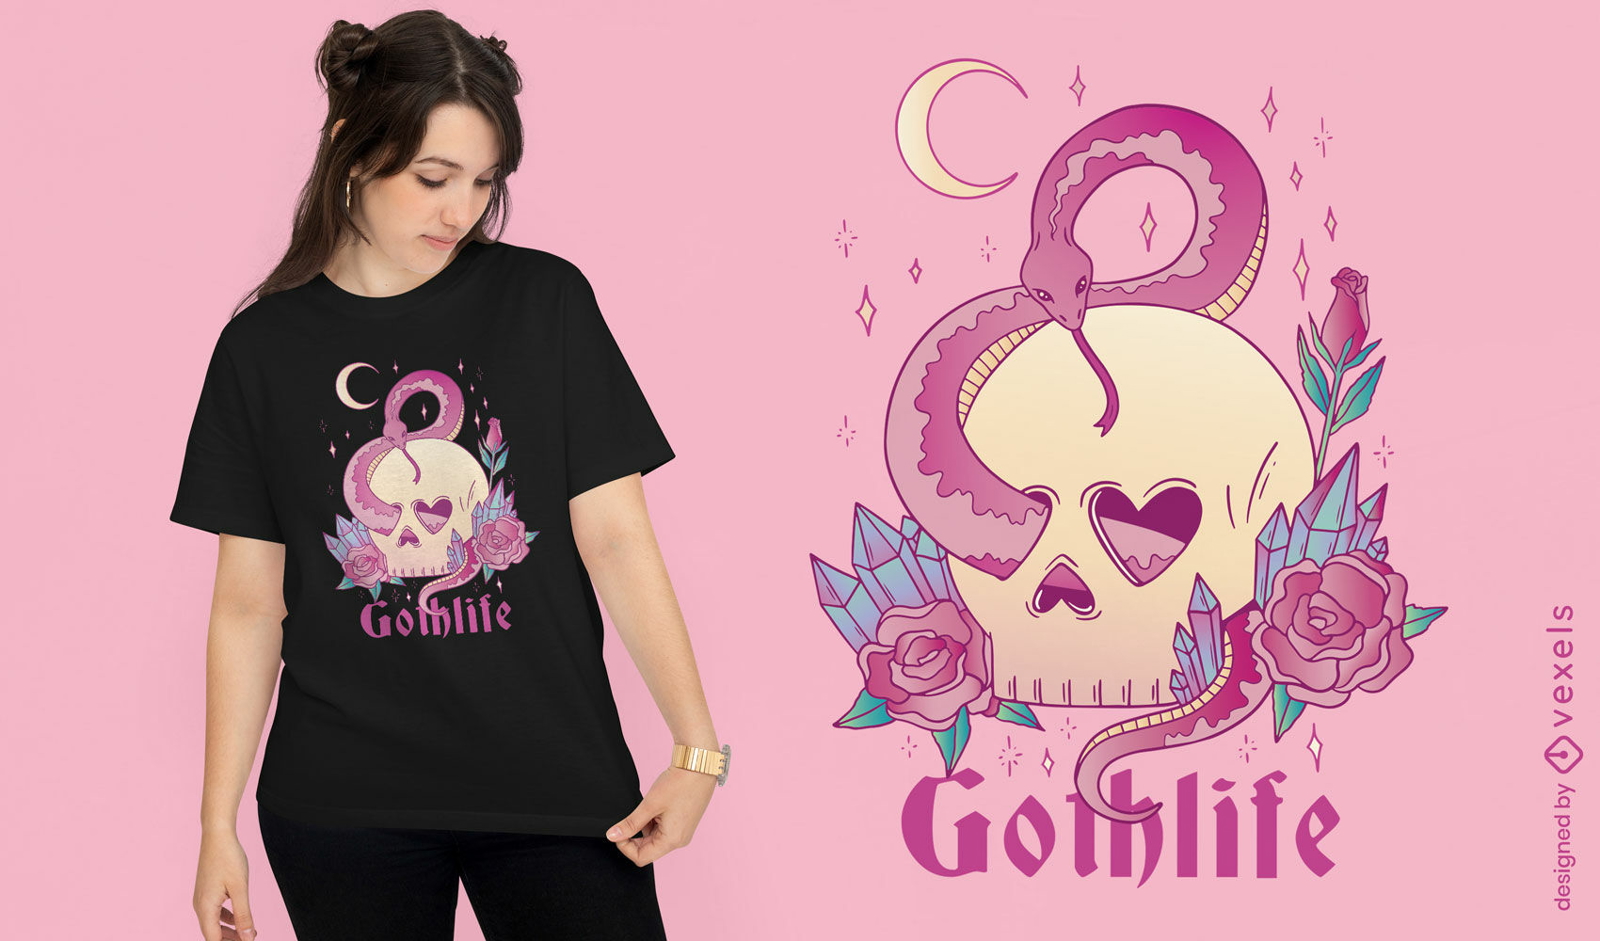 Pastell-Gothic-Sch?del und Schlangen-T-Shirt-Design